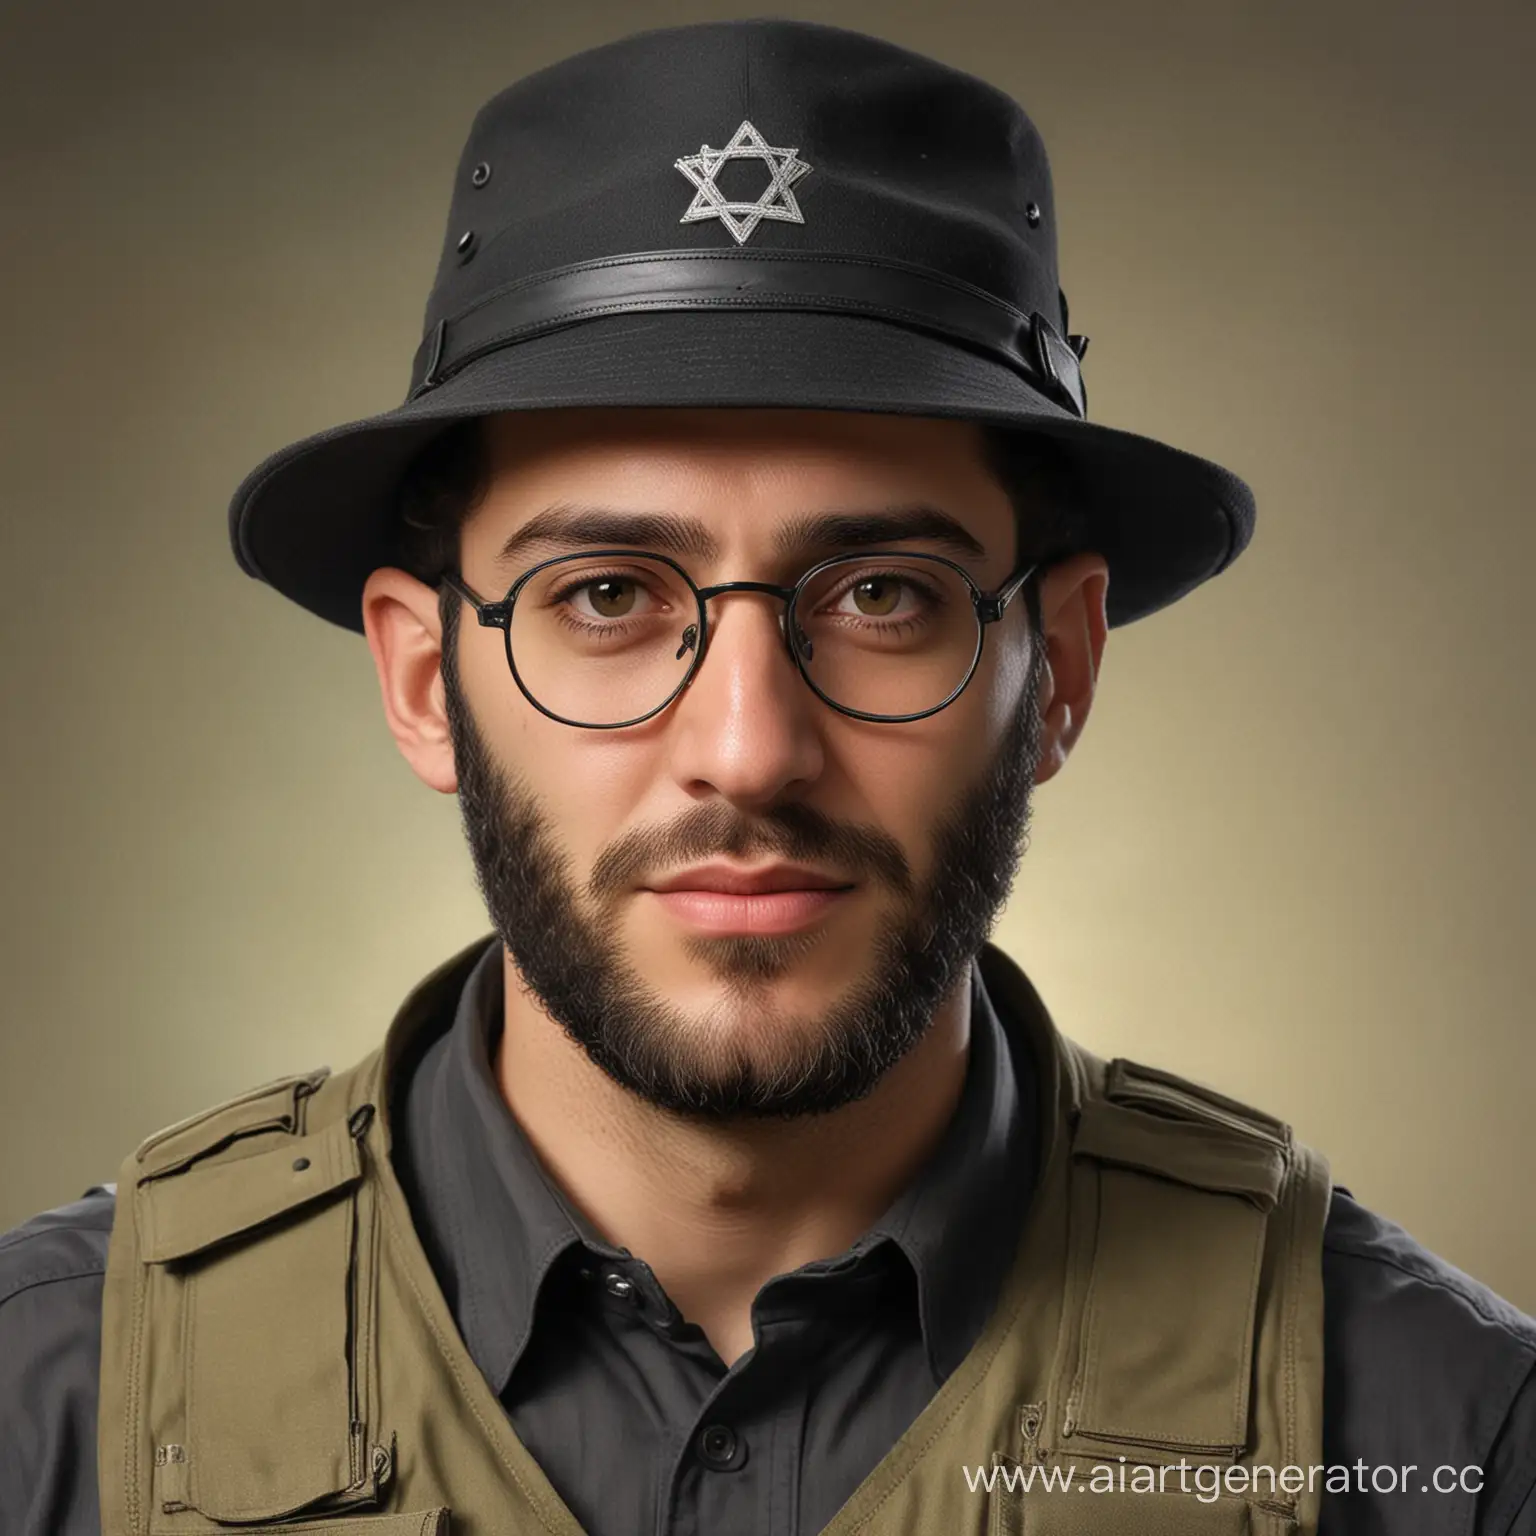 Сгенерируй портретную фотографию еврея - в обвесе бронежилета с тактическими карманами, пейсами, шляпой и очками, под очками на левом глазу шрам